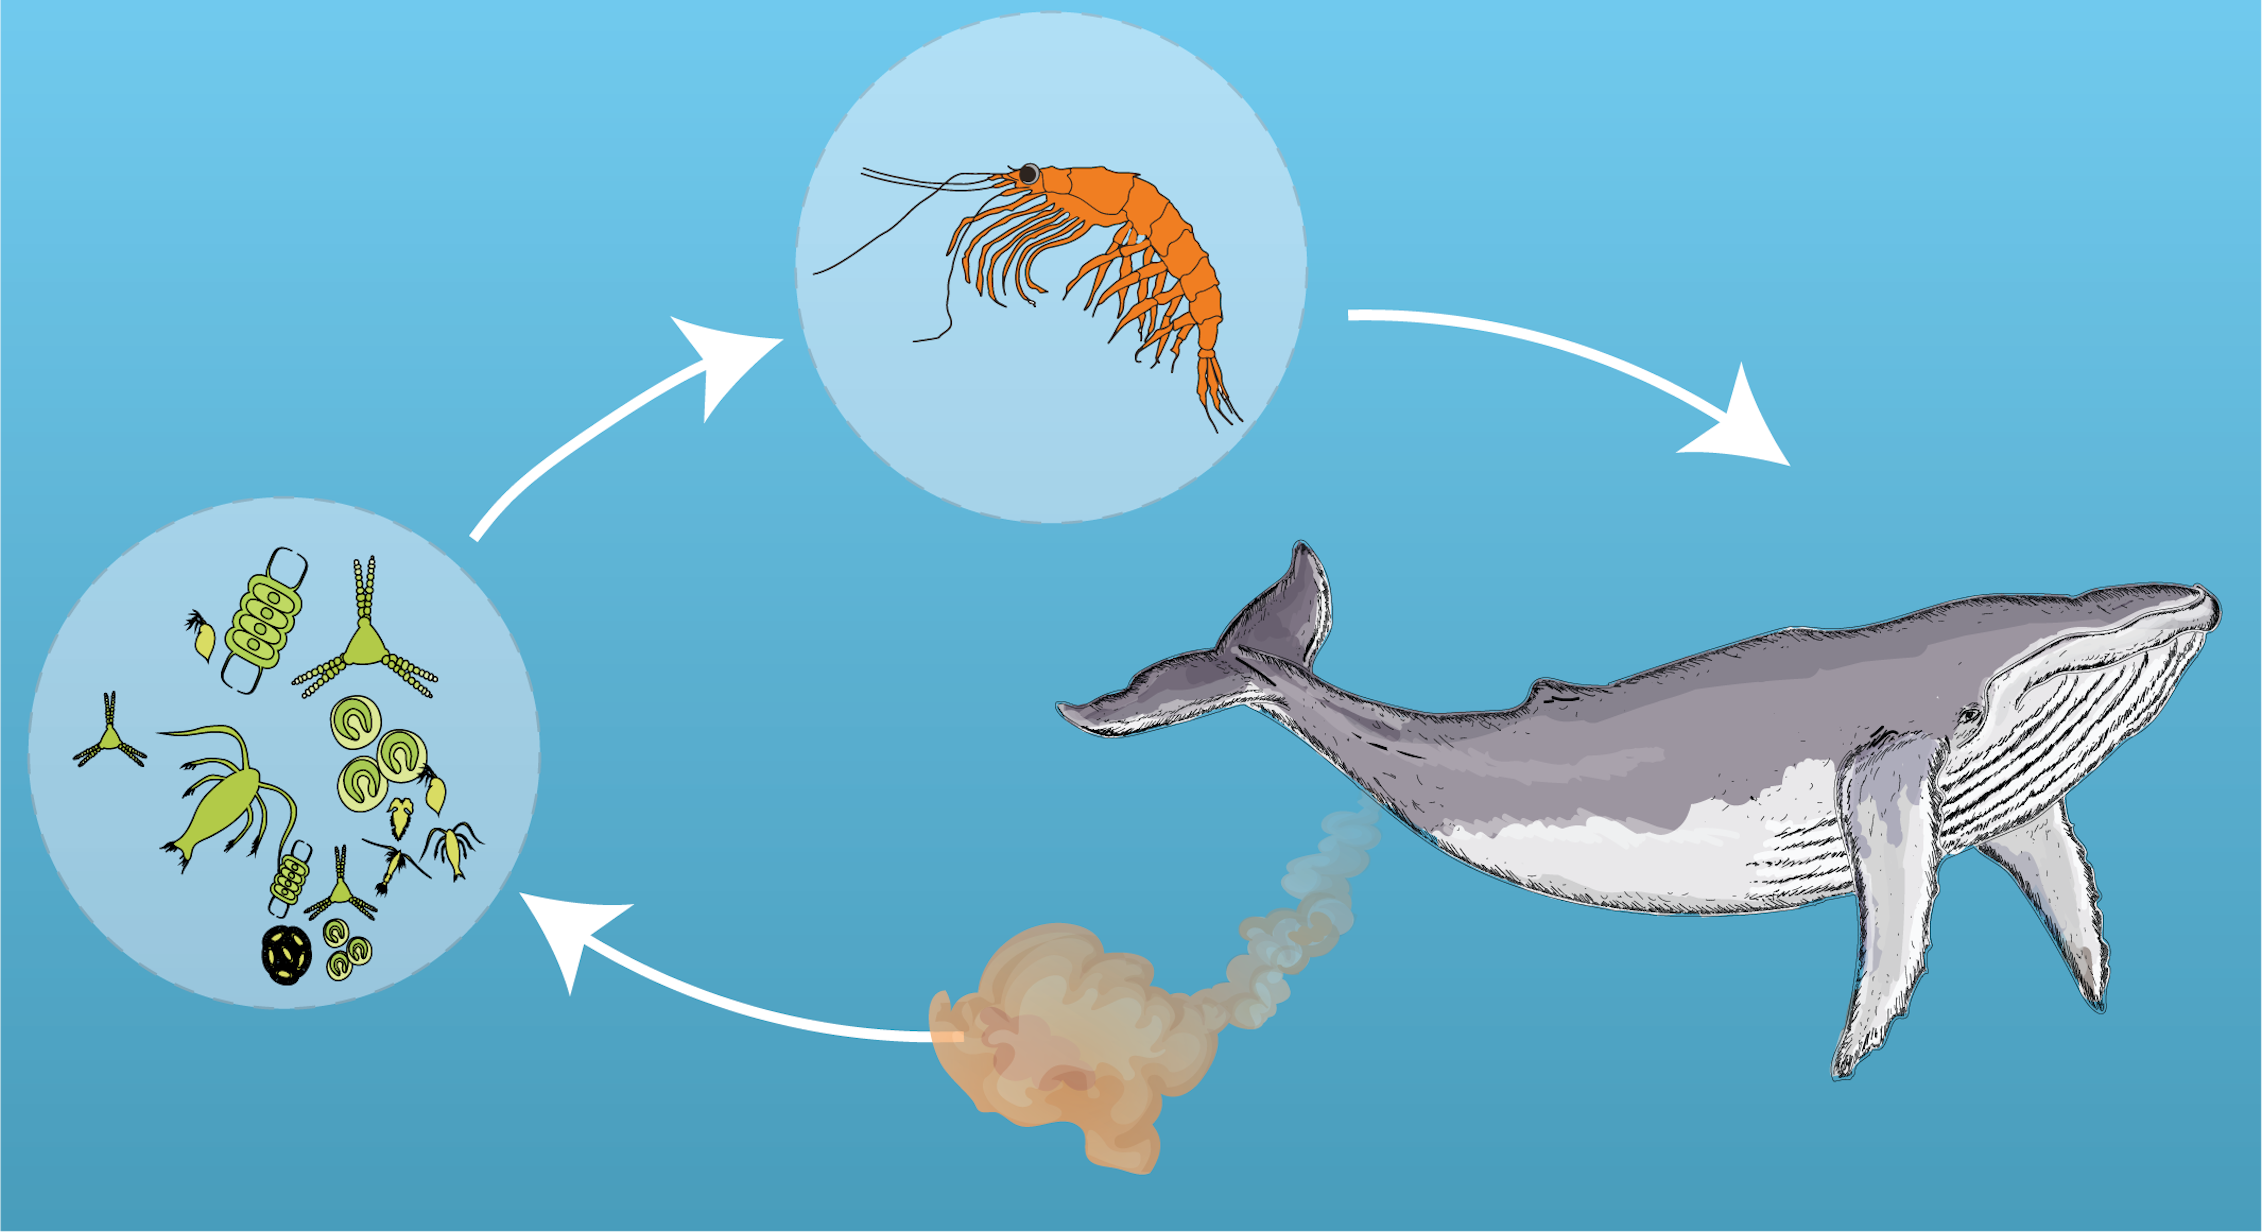 Цепь питания планктона. Питание китов. Синий кит питается планктоном. Планктон пища для китов. Кит поедает планктон.